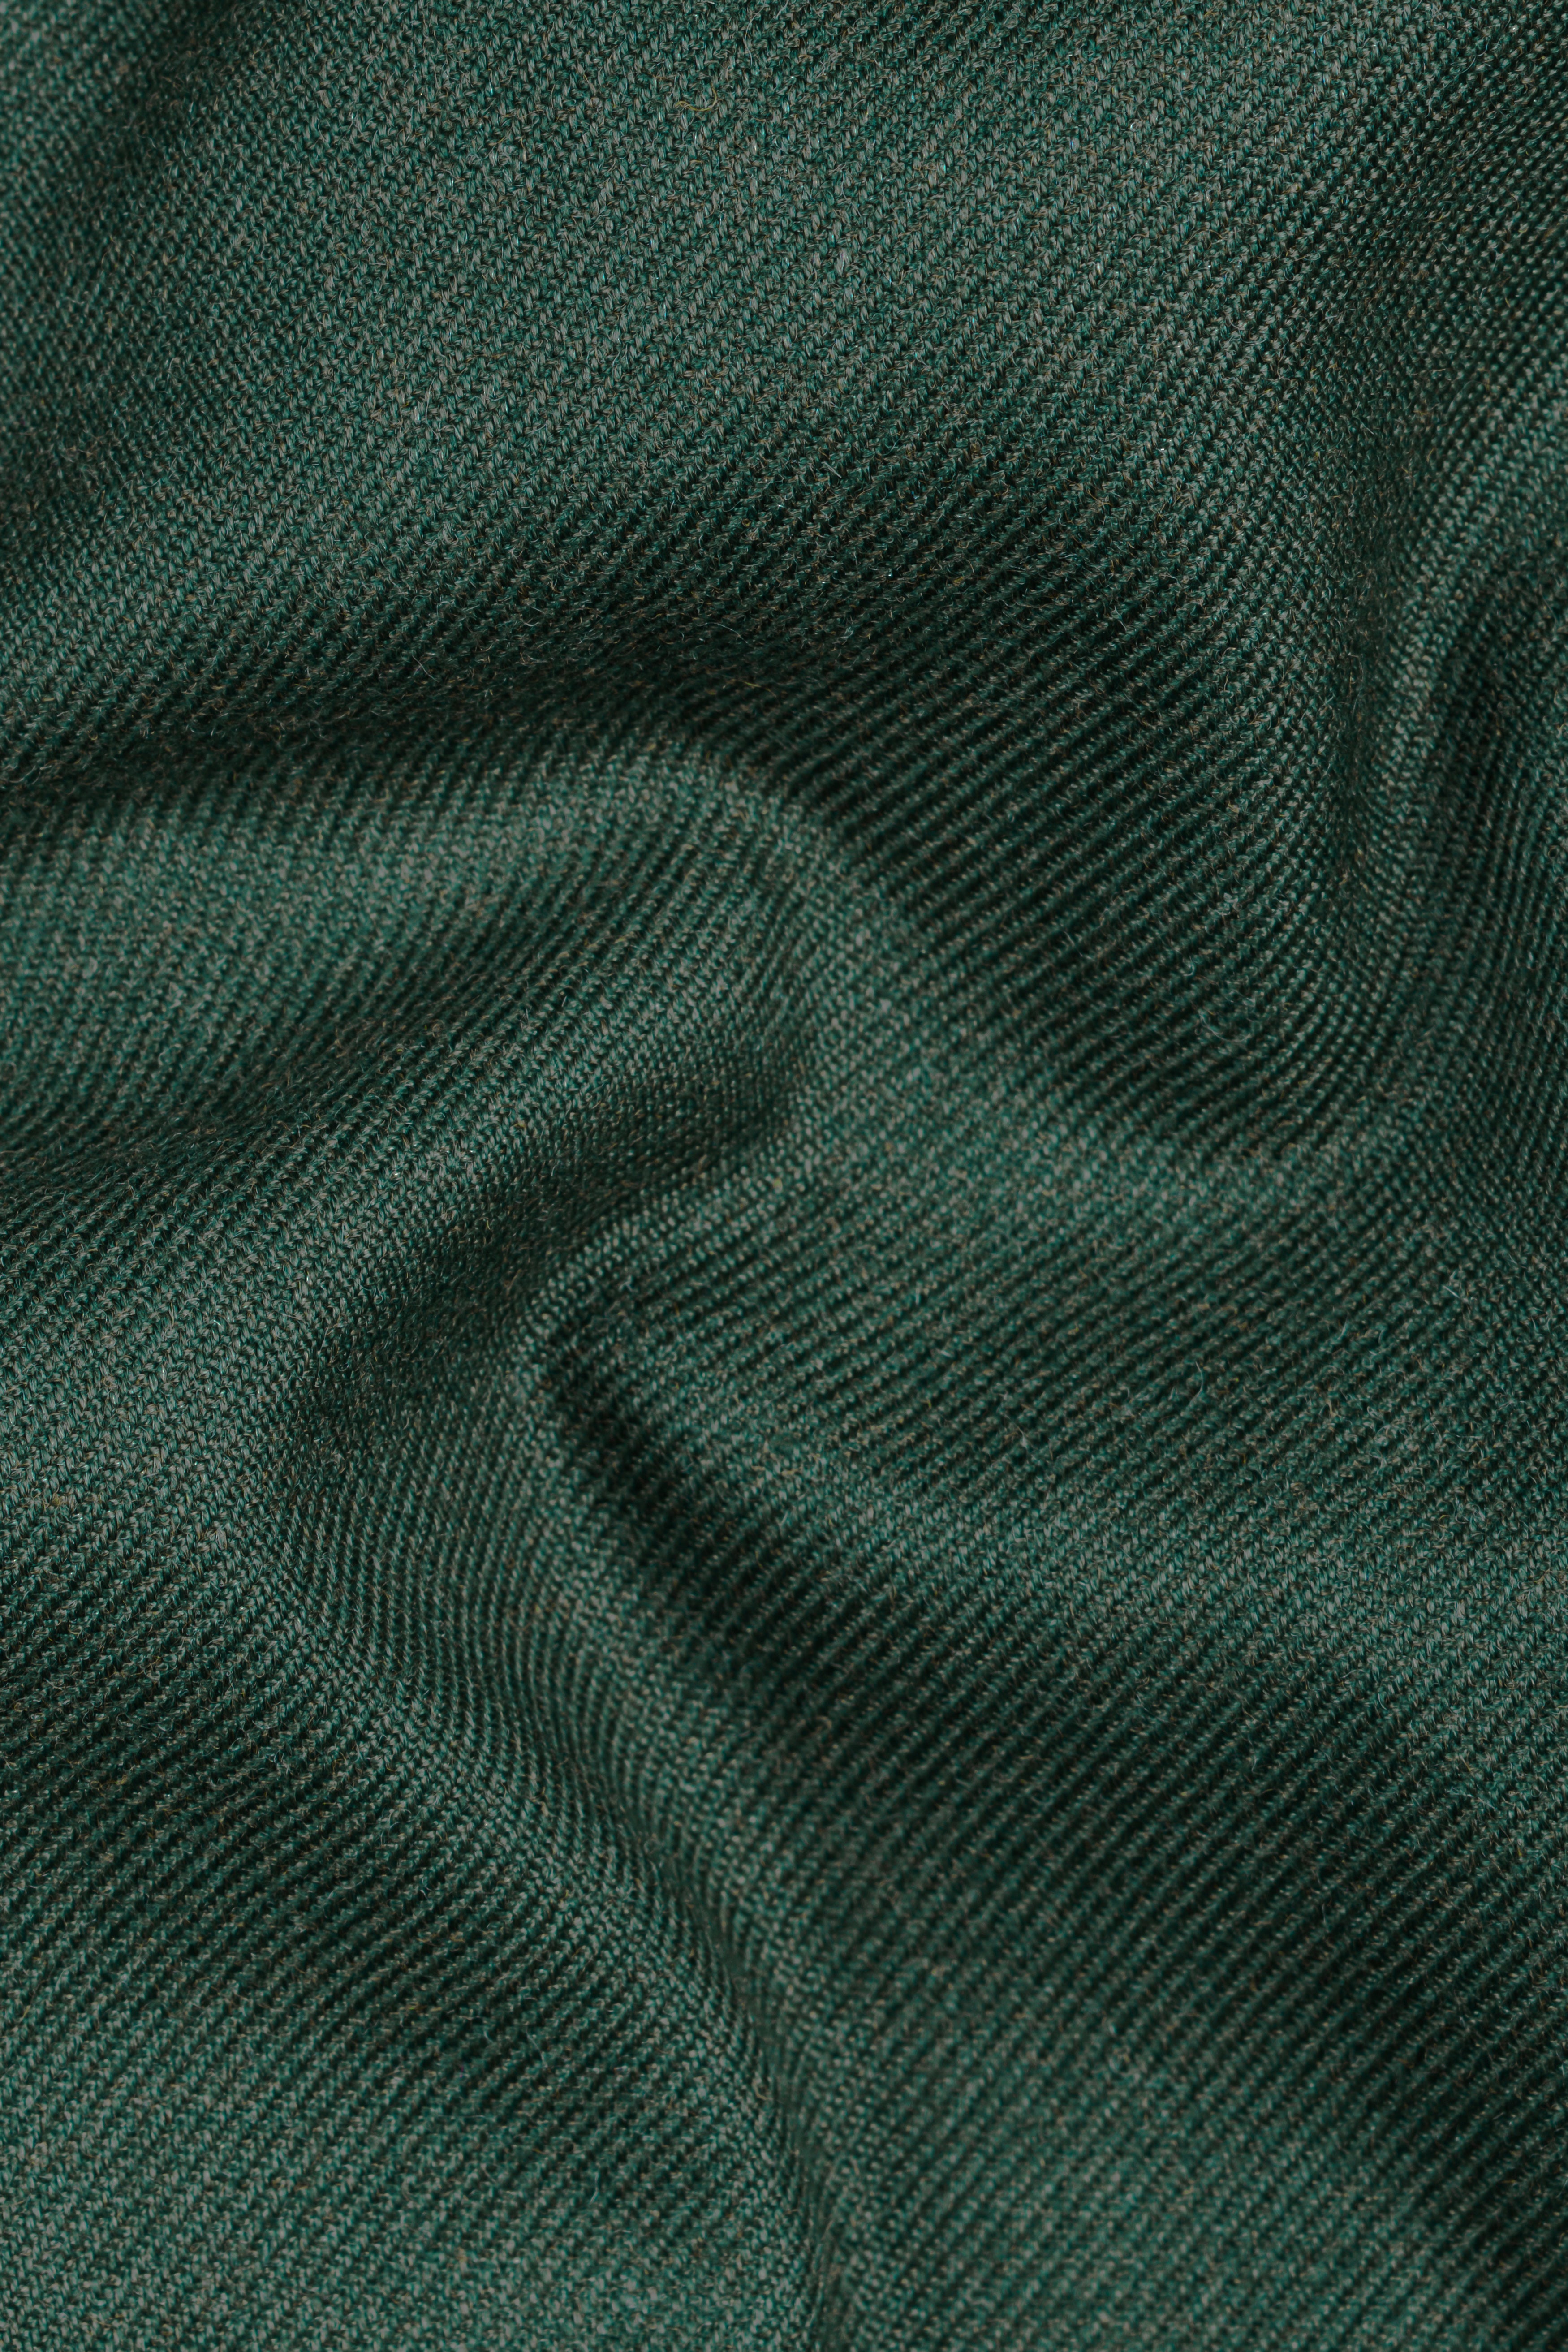 Plantation Green Textured Tweed Blazer